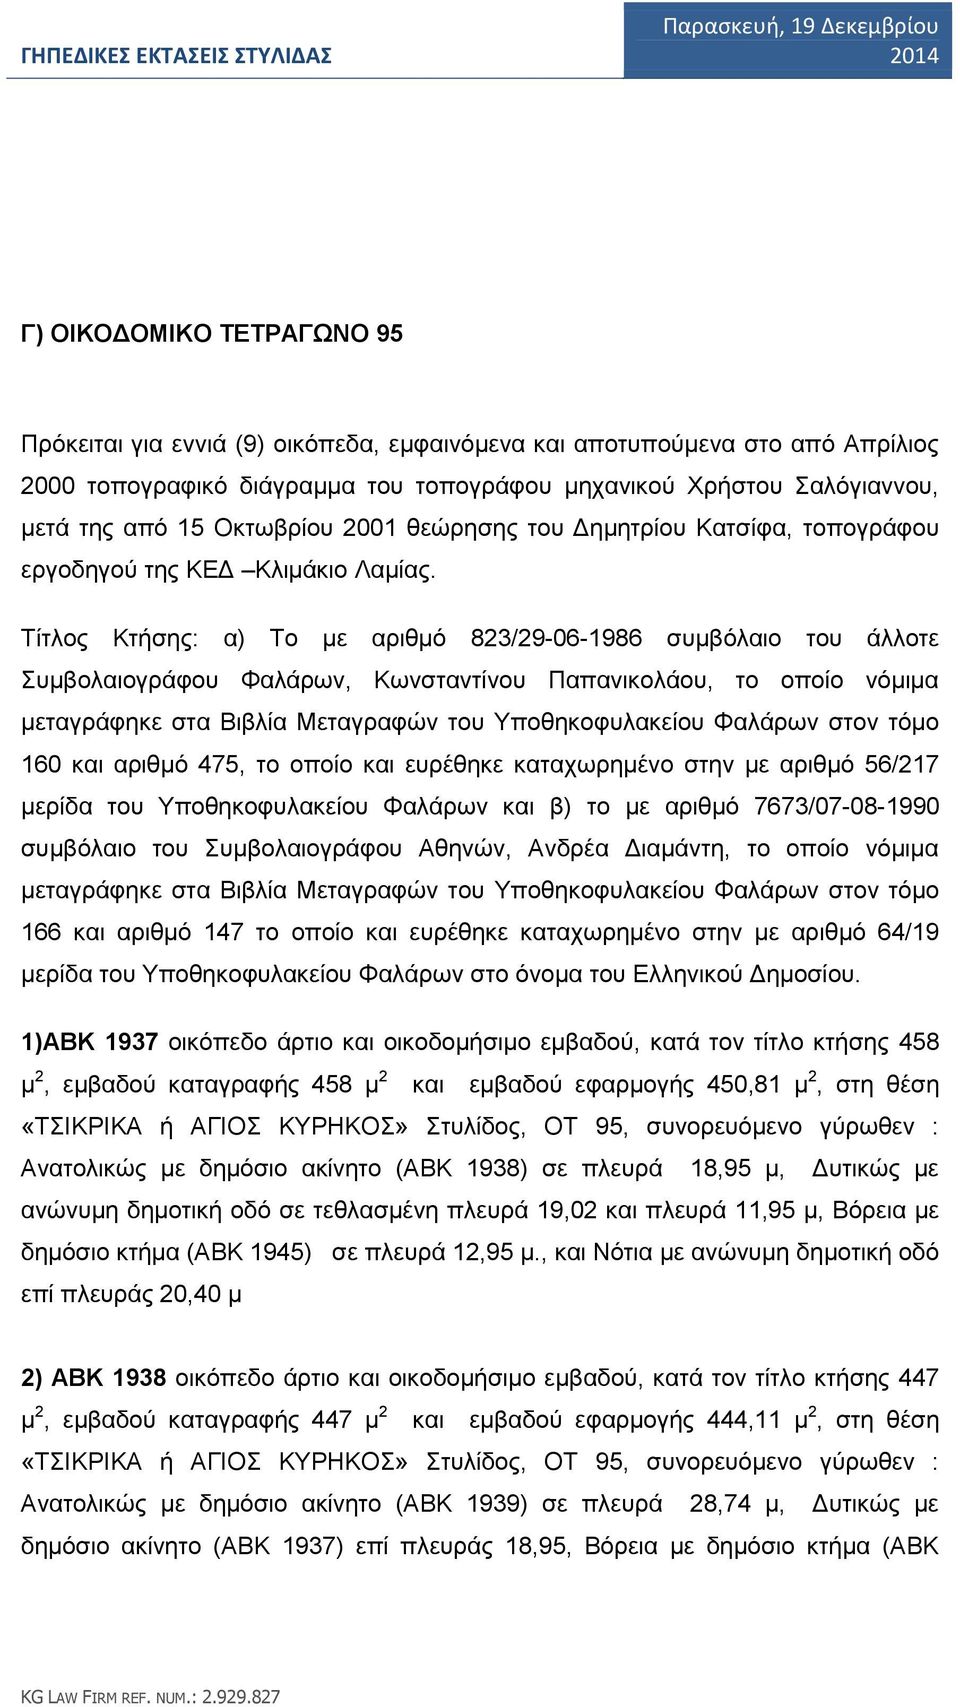 Τίτλος Κτήσης: α) Το με αριθμό 823/29-06-1986 συμβόλαιο του άλλοτε Συμβολαιογράφου Φαλάρων, Κωνσταντίνου Παπανικολάου, το οποίο νόμιμα μεταγράφηκε στα Βιβλία Μεταγραφών του Υποθηκοφυλακείου Φαλάρων